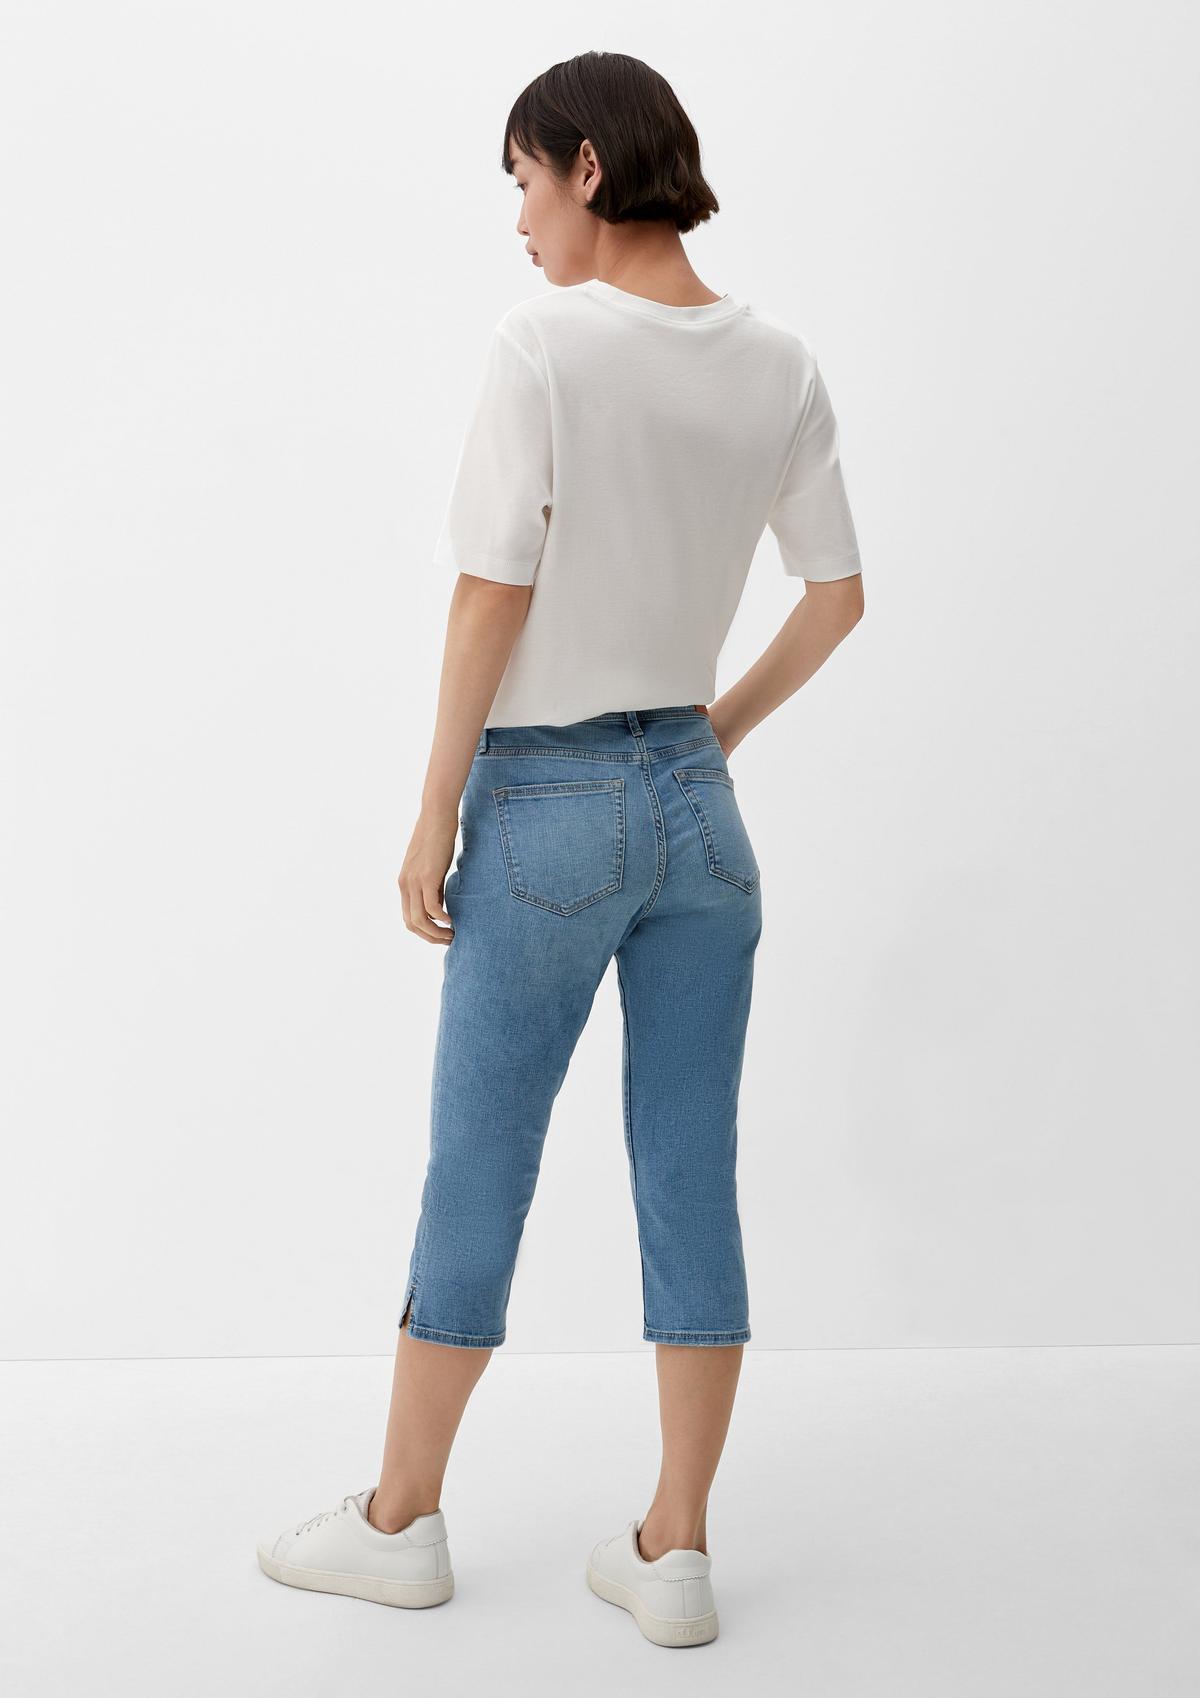 s.Oliver Shop jeans